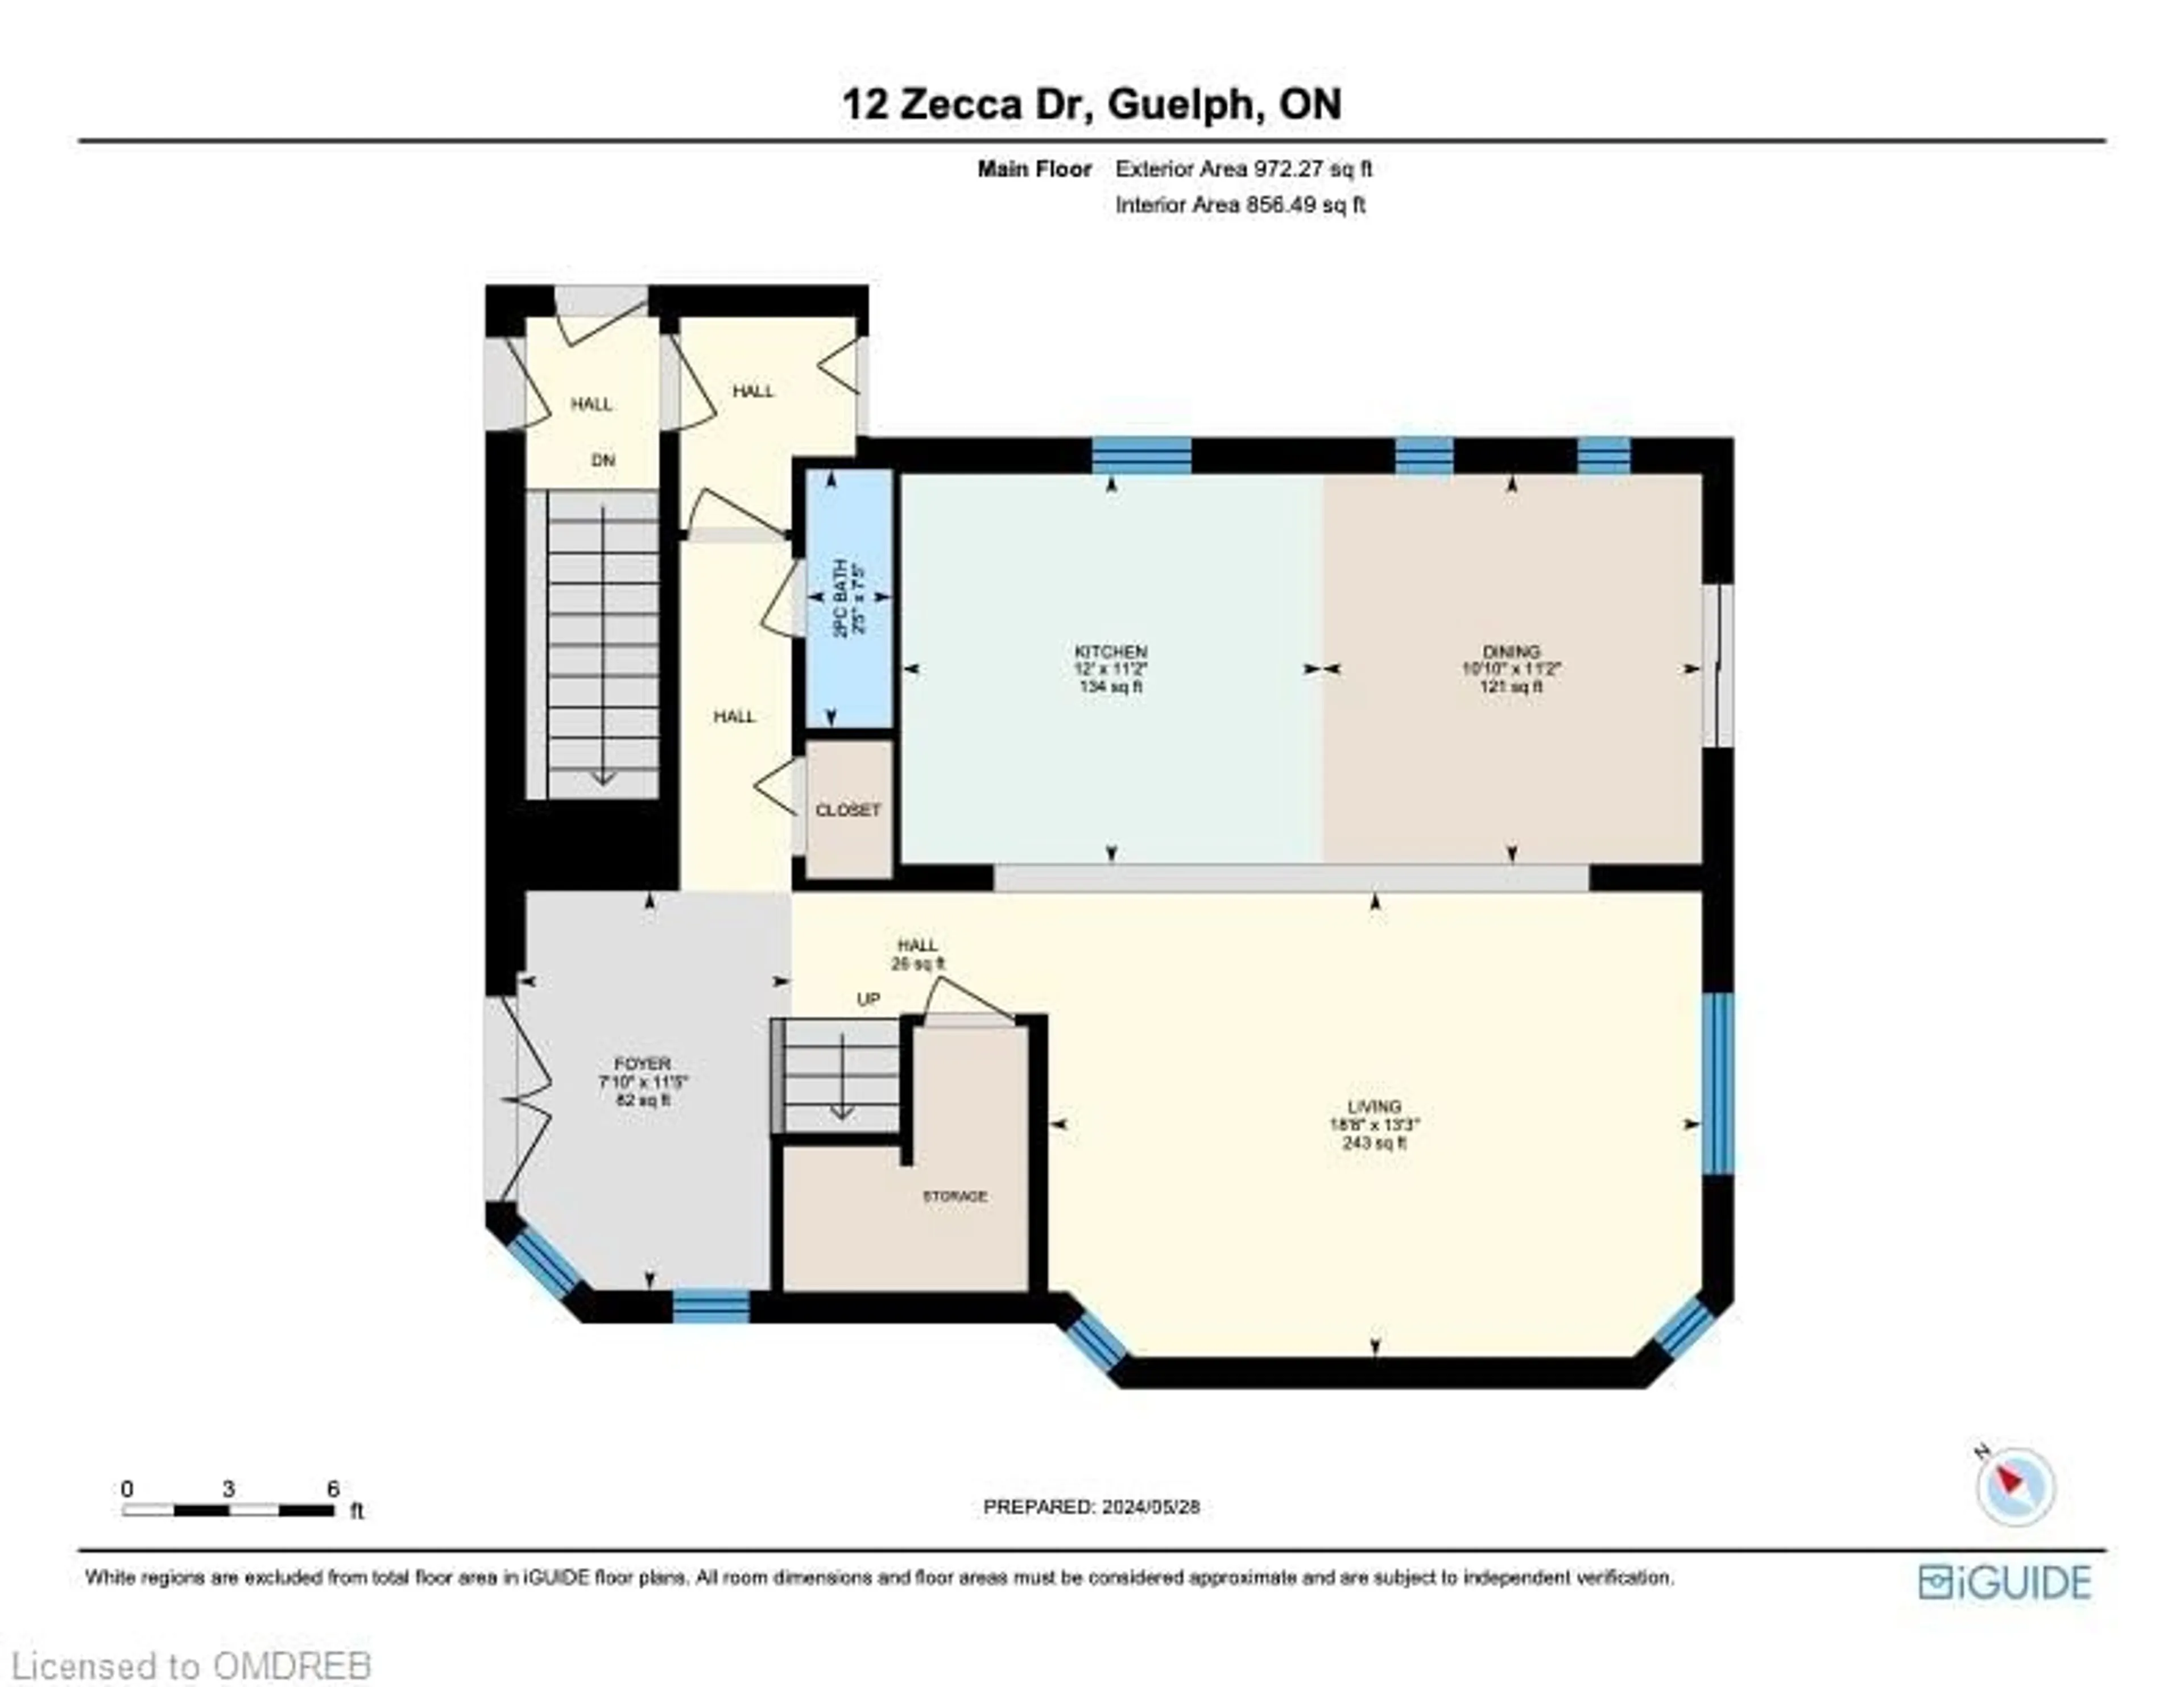 Floor plan for 12 Zecca Dr, Guelph Ontario N1L 1T1